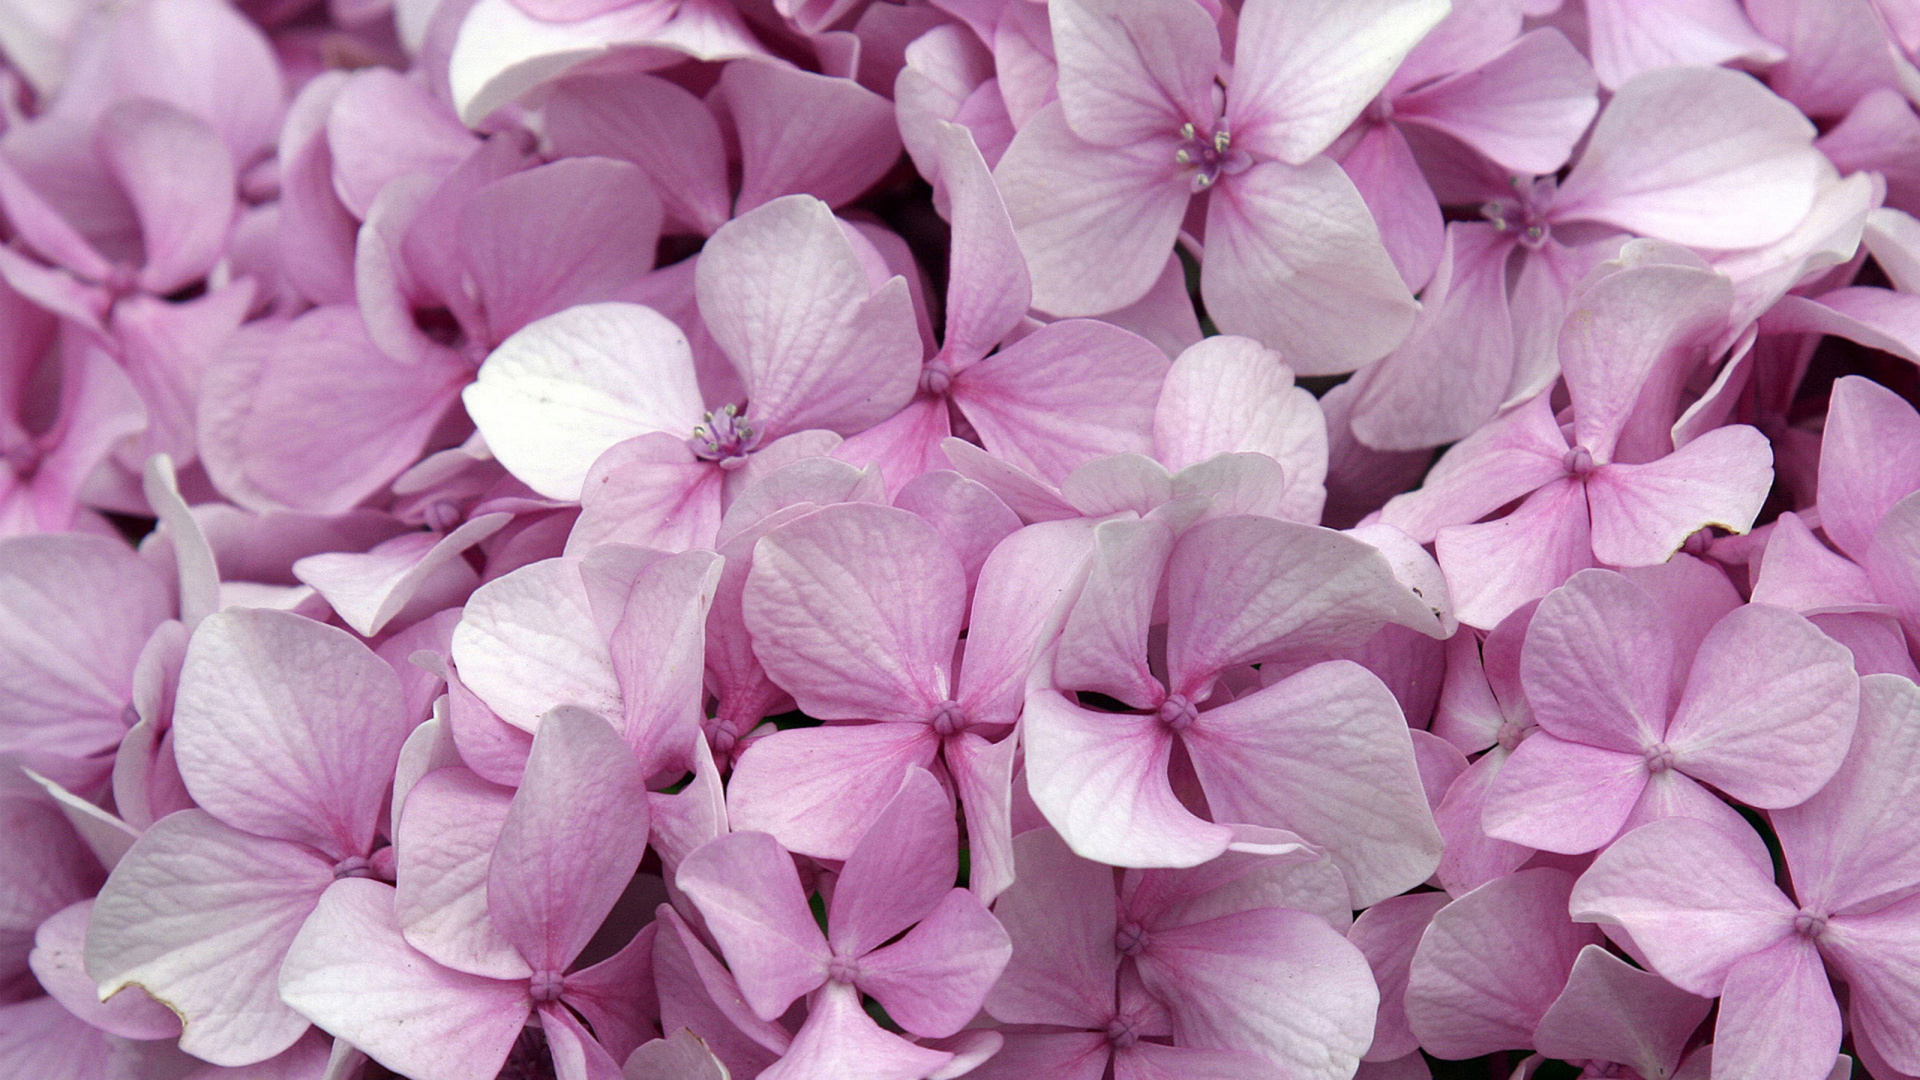 绣球花, 粉红色的花朵, 粉红色, 淡紫色的, 紫色的 壁纸 1920x1080 允许